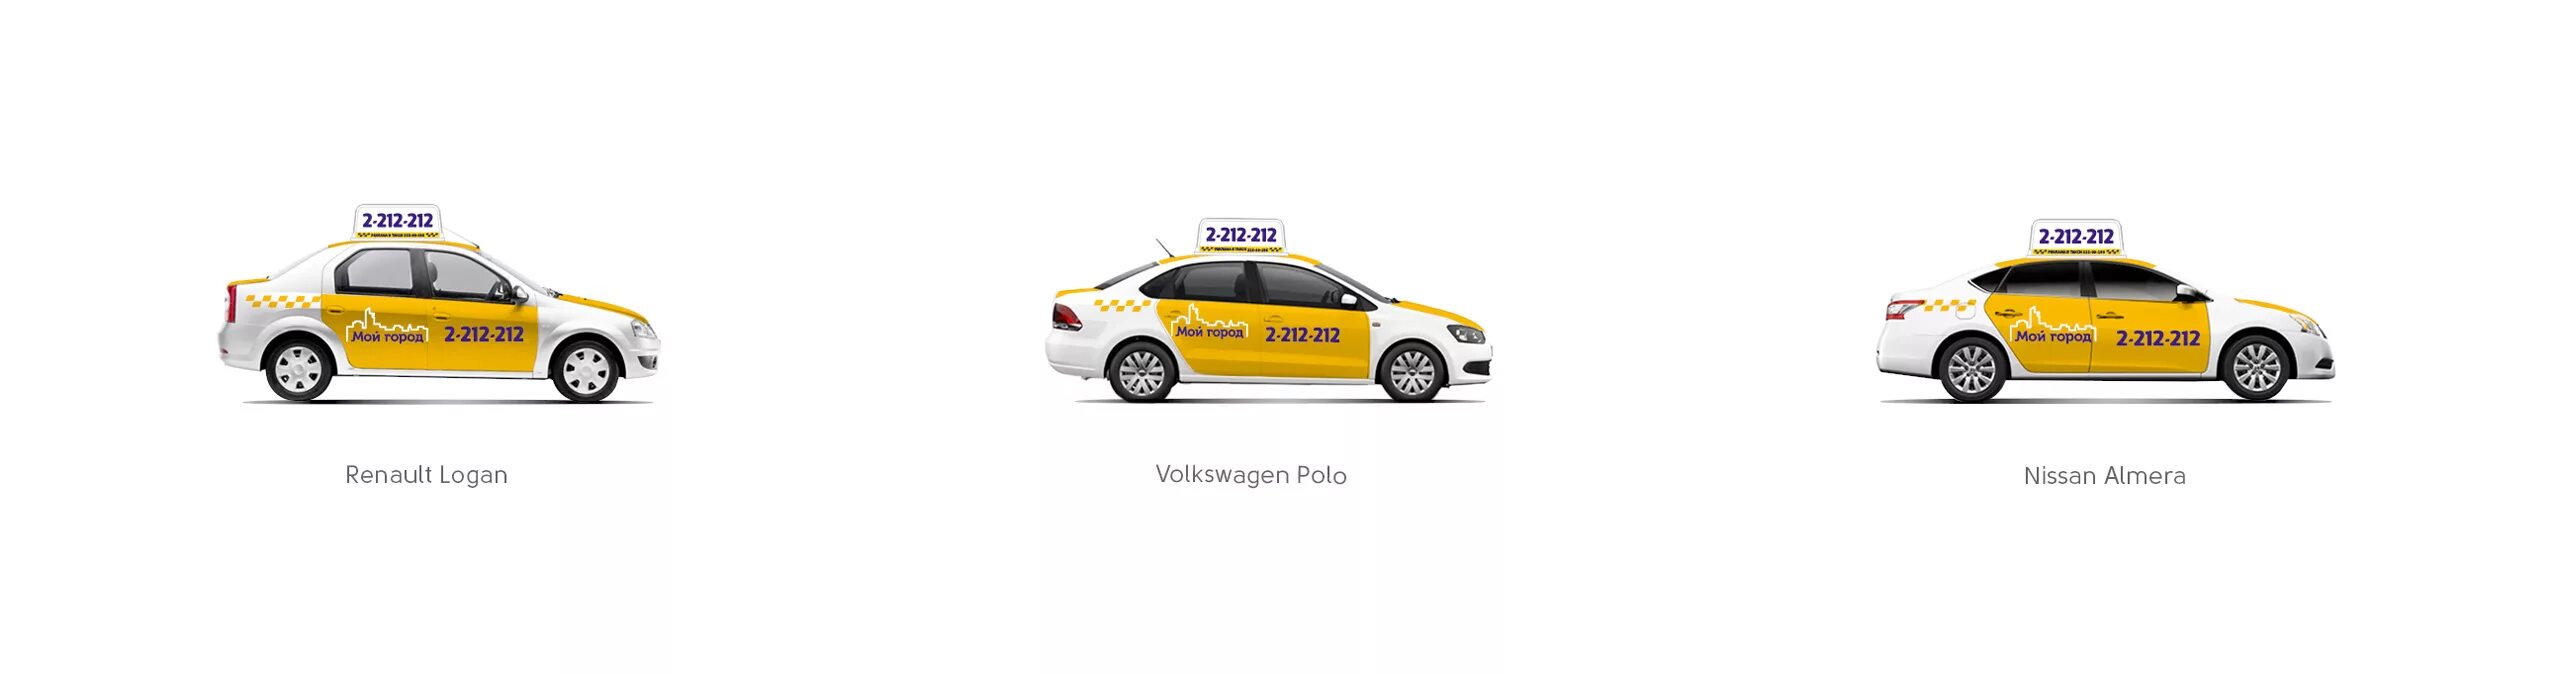 Реестр легкового такси москва. Фирменный стиль такси. Цветографическая схема такси. Машина такси сбоку.